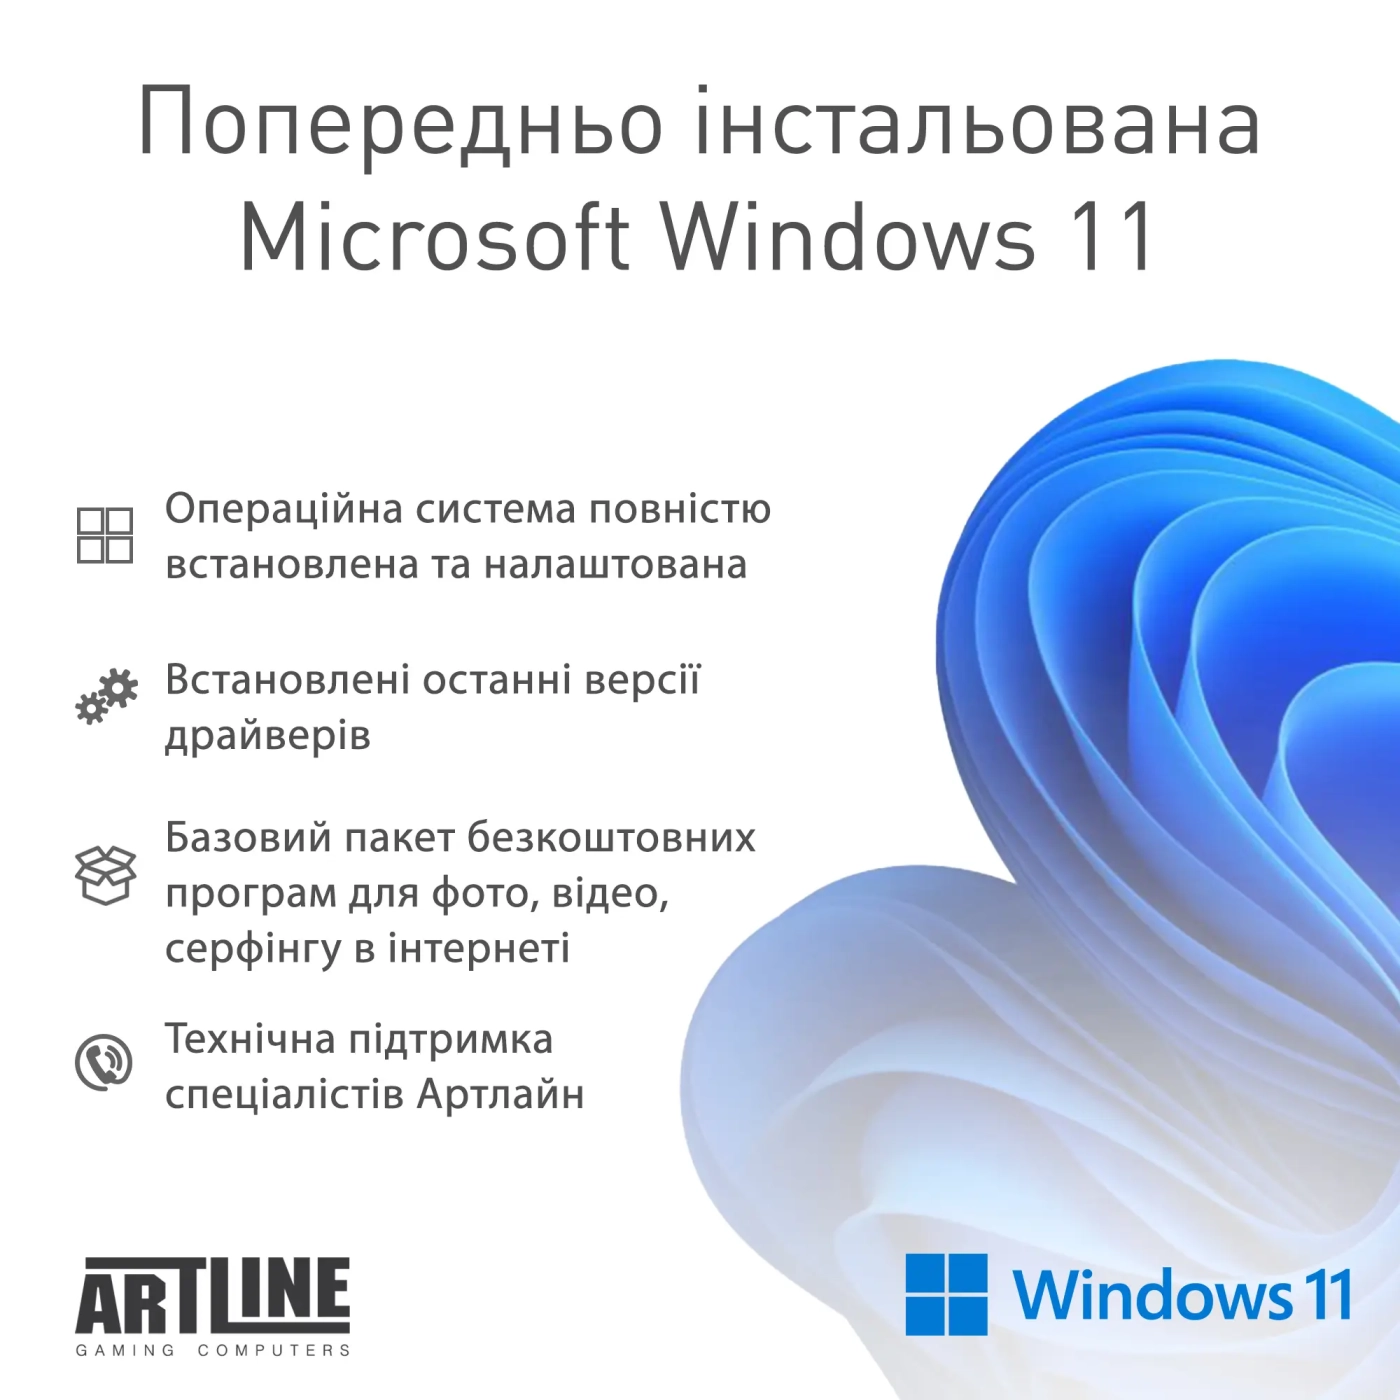 Купить Рабочая станция ARTLINE WorkStation W79 Windows 11 Pro (W79v23Win) - фото 9